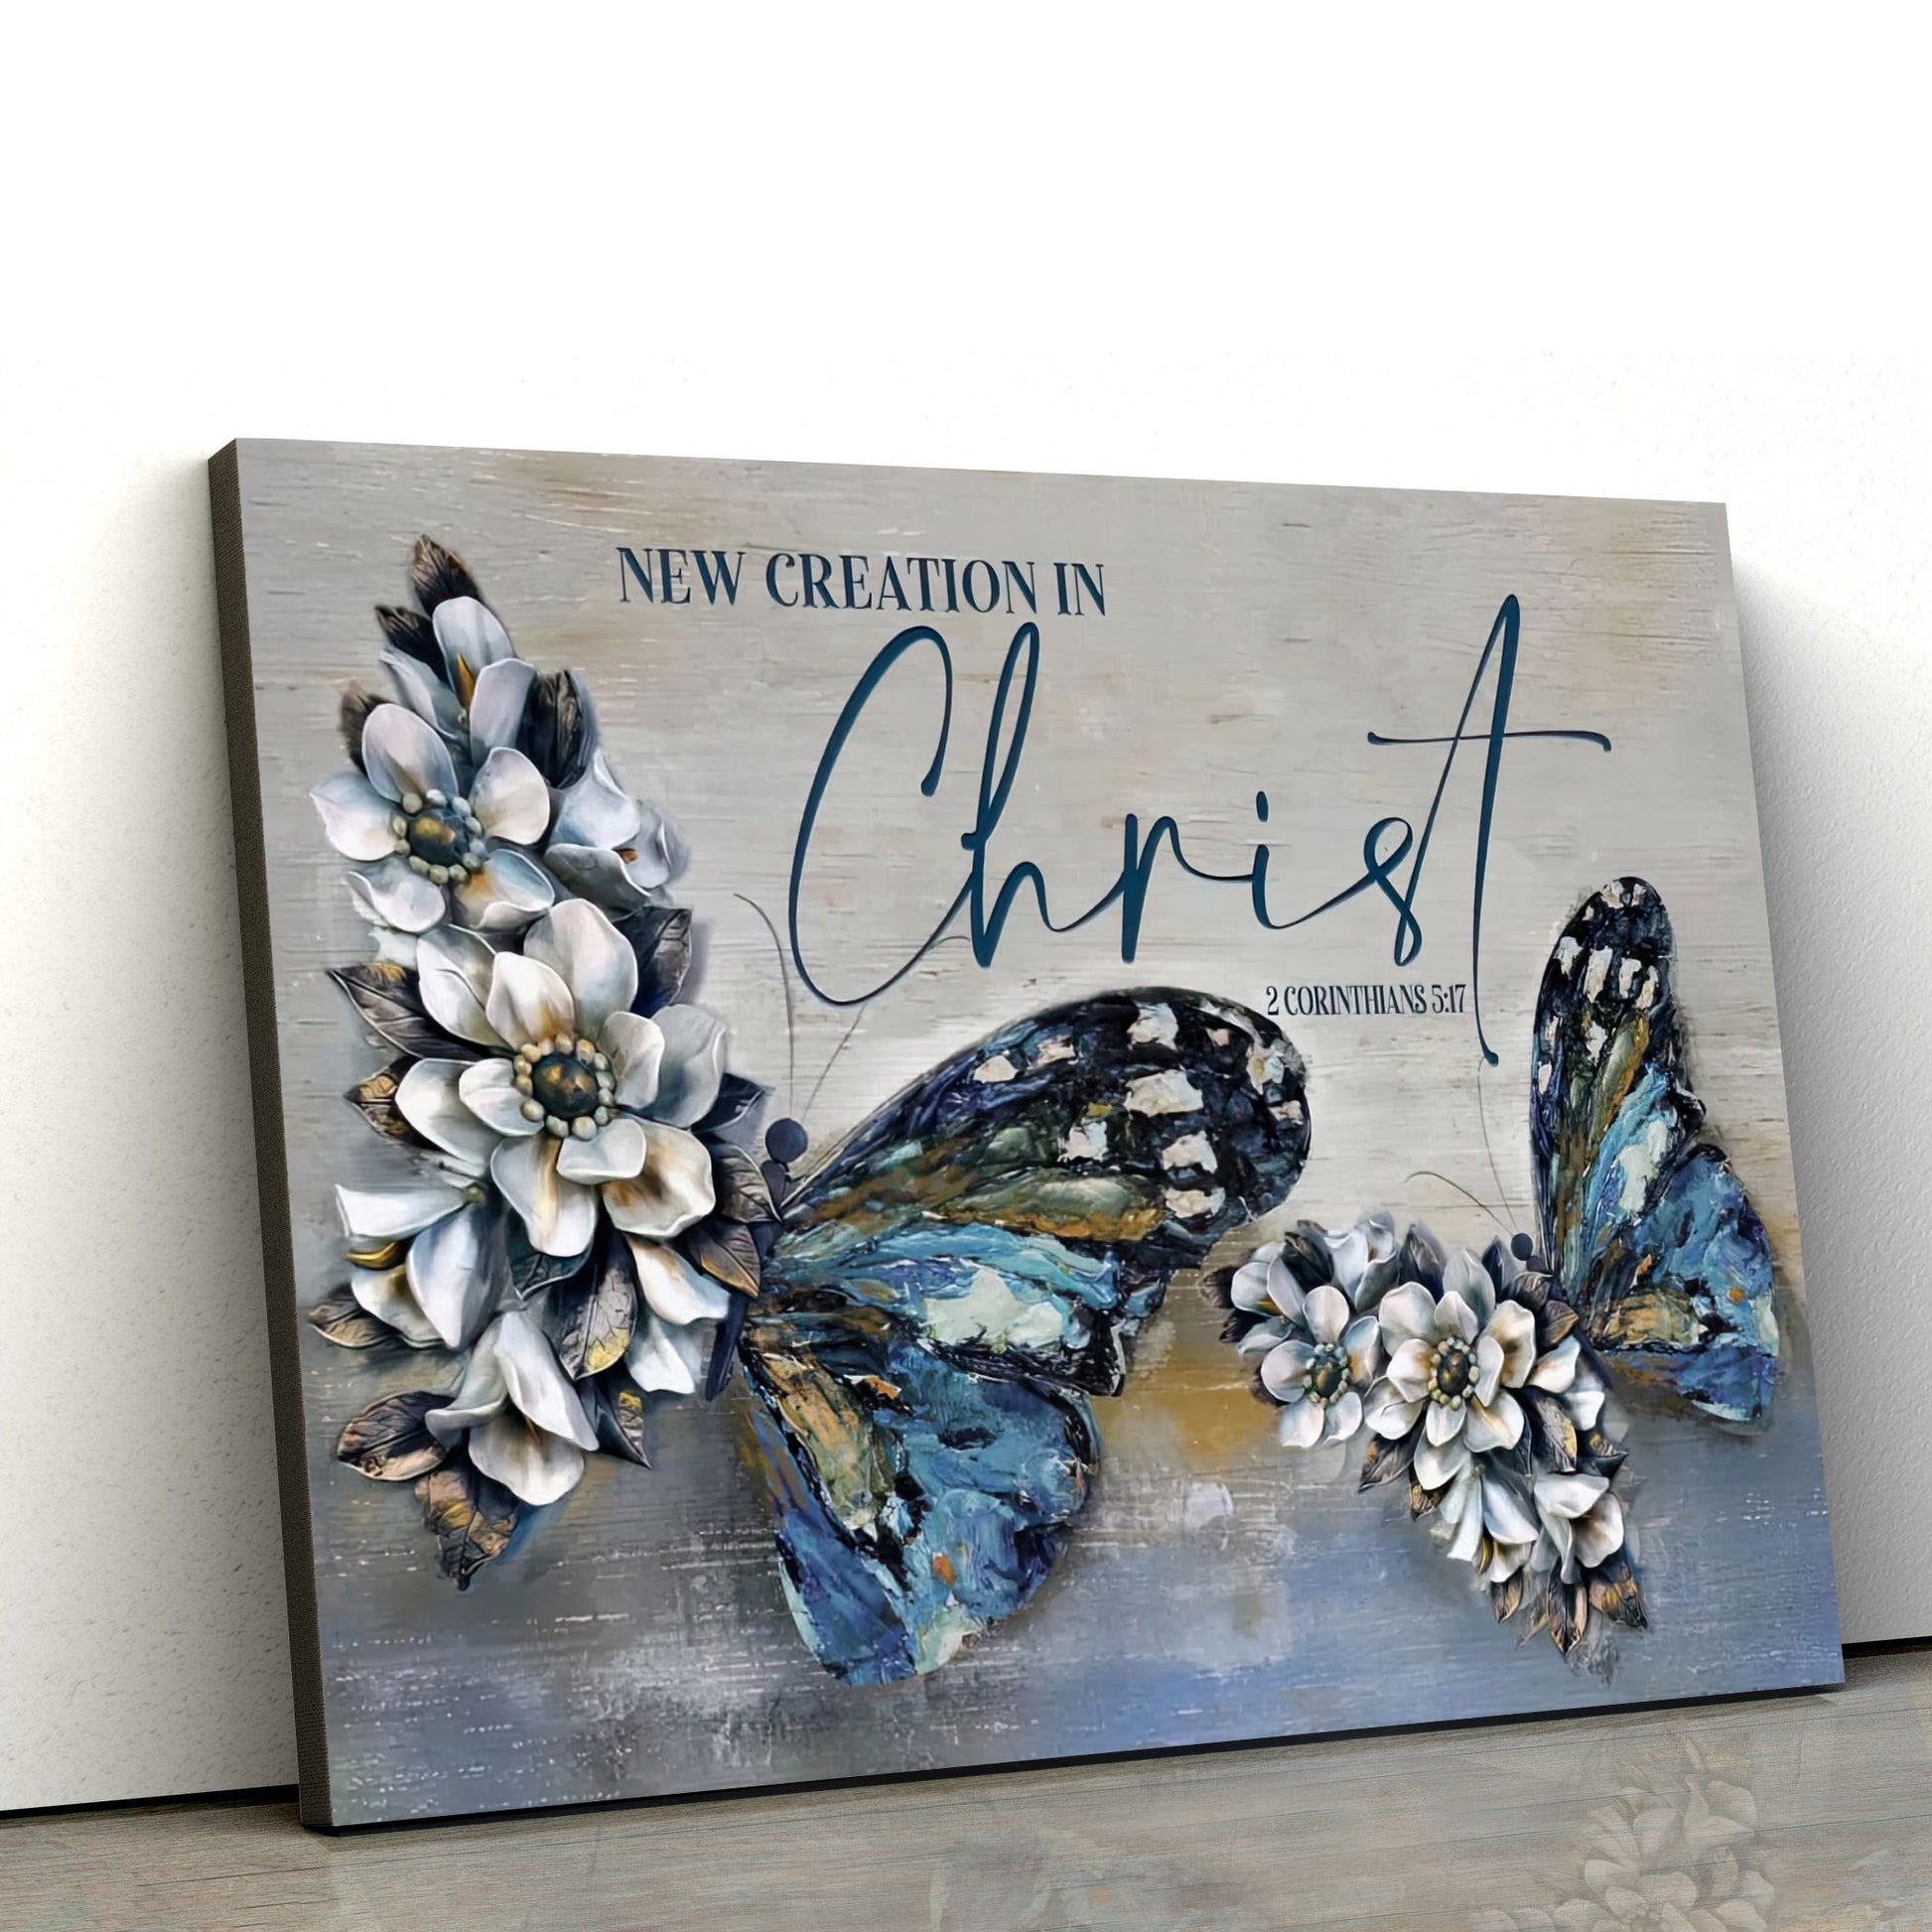 2 Cor 517 New Creation In Christ Wall Art Canvas Butterflies Christian Decor - Christian Art Gift